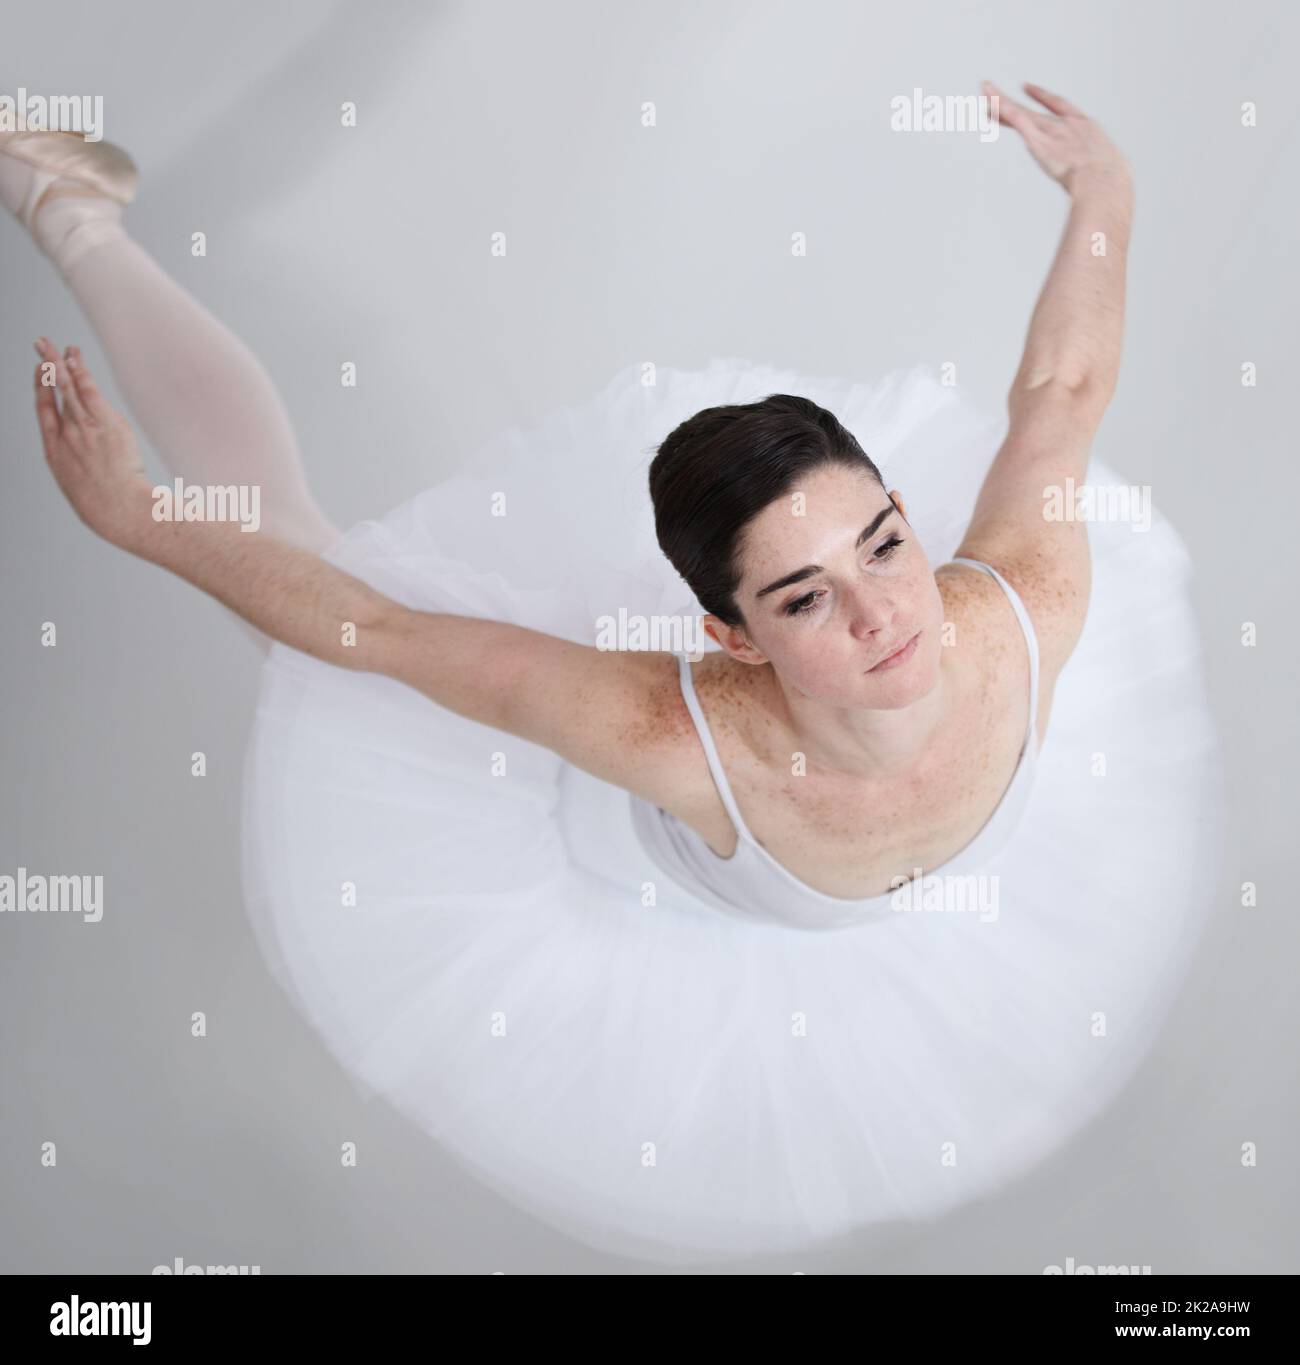 Voller Eleganz und Anmut. Geschmeidige junge Ballerina, die vor weißem Hintergrund tanzt. Stockfoto